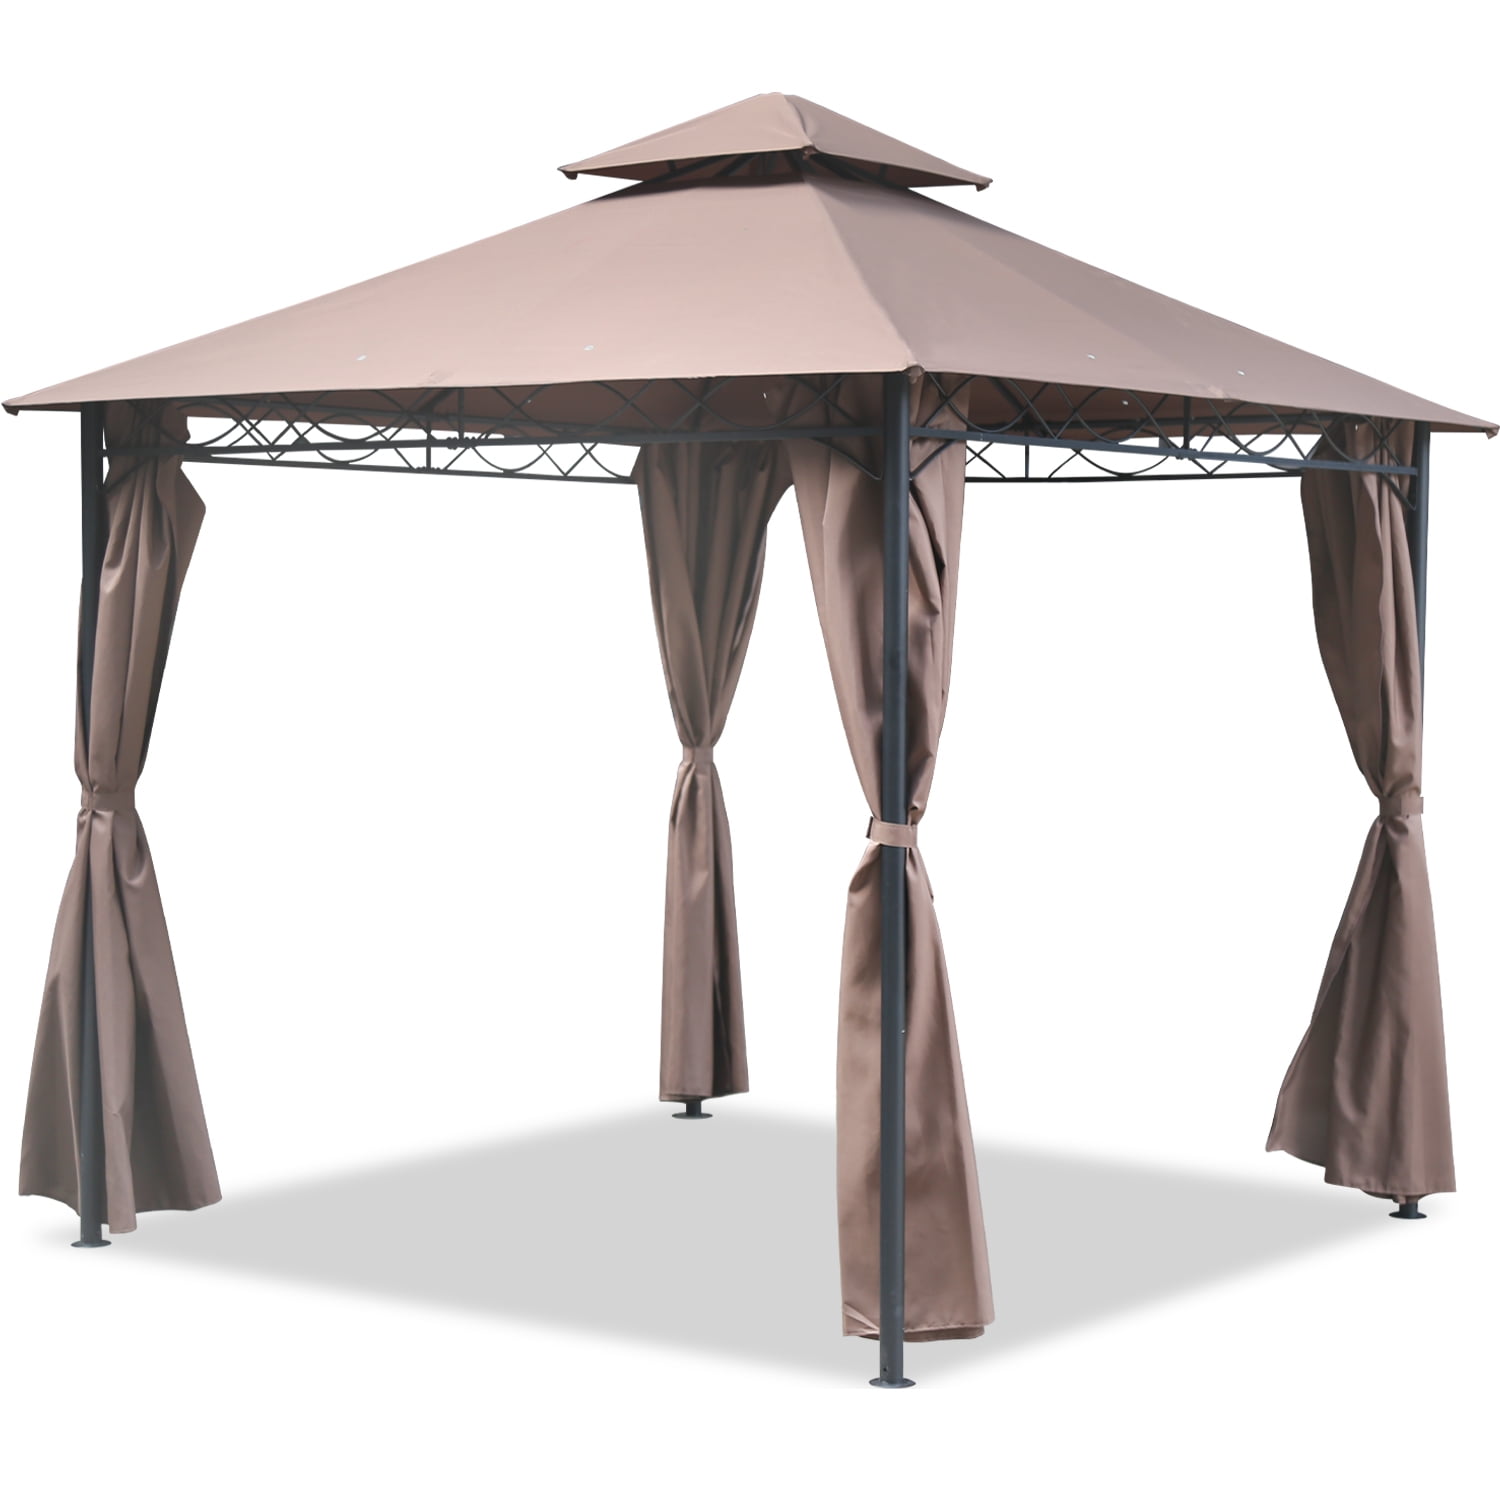 Gazebo Canopy Tent 10 X Outdoor With Sidewall Com - Abccanopy 10 X 12 Patio Gazebo Canopy